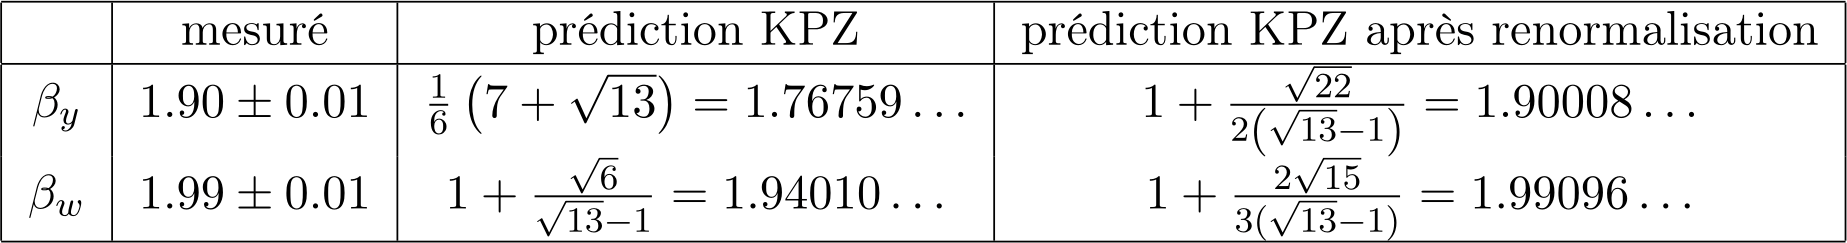 Exemples d’exposants mesurés et leur comparaison à KPZ, avant et après renormalisation